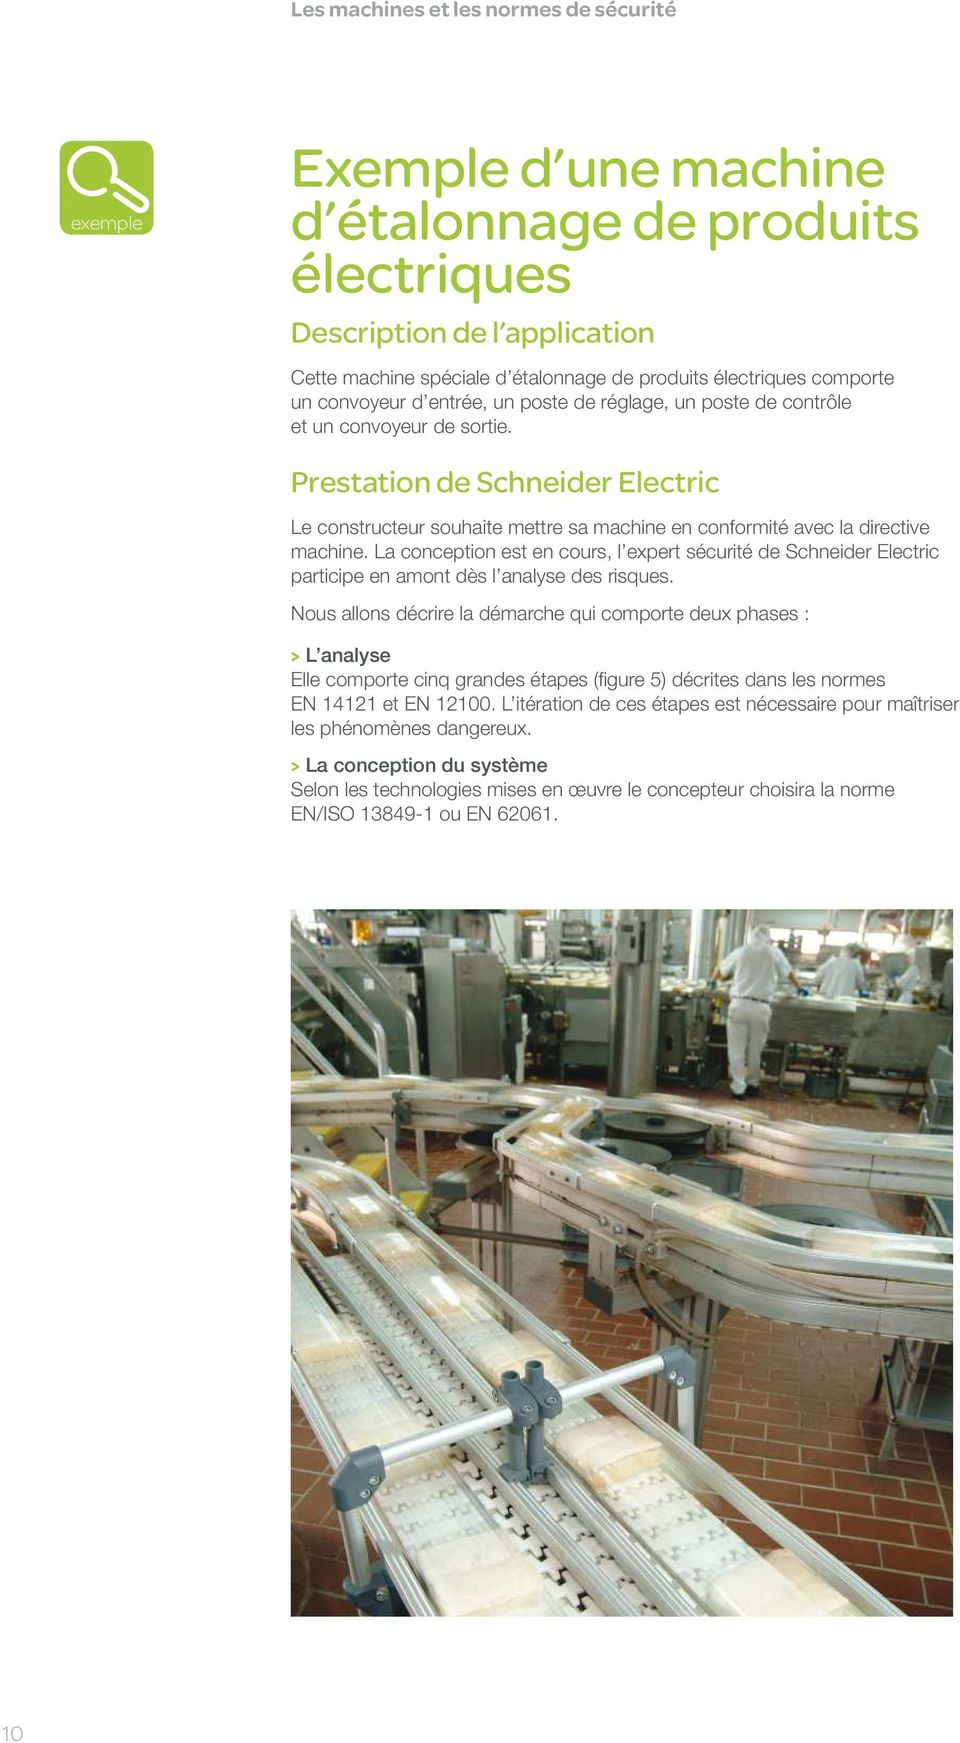 Prestation de Schneider Electric Le constructeur souhaite mettre sa machine en conformité avec la directive machine.